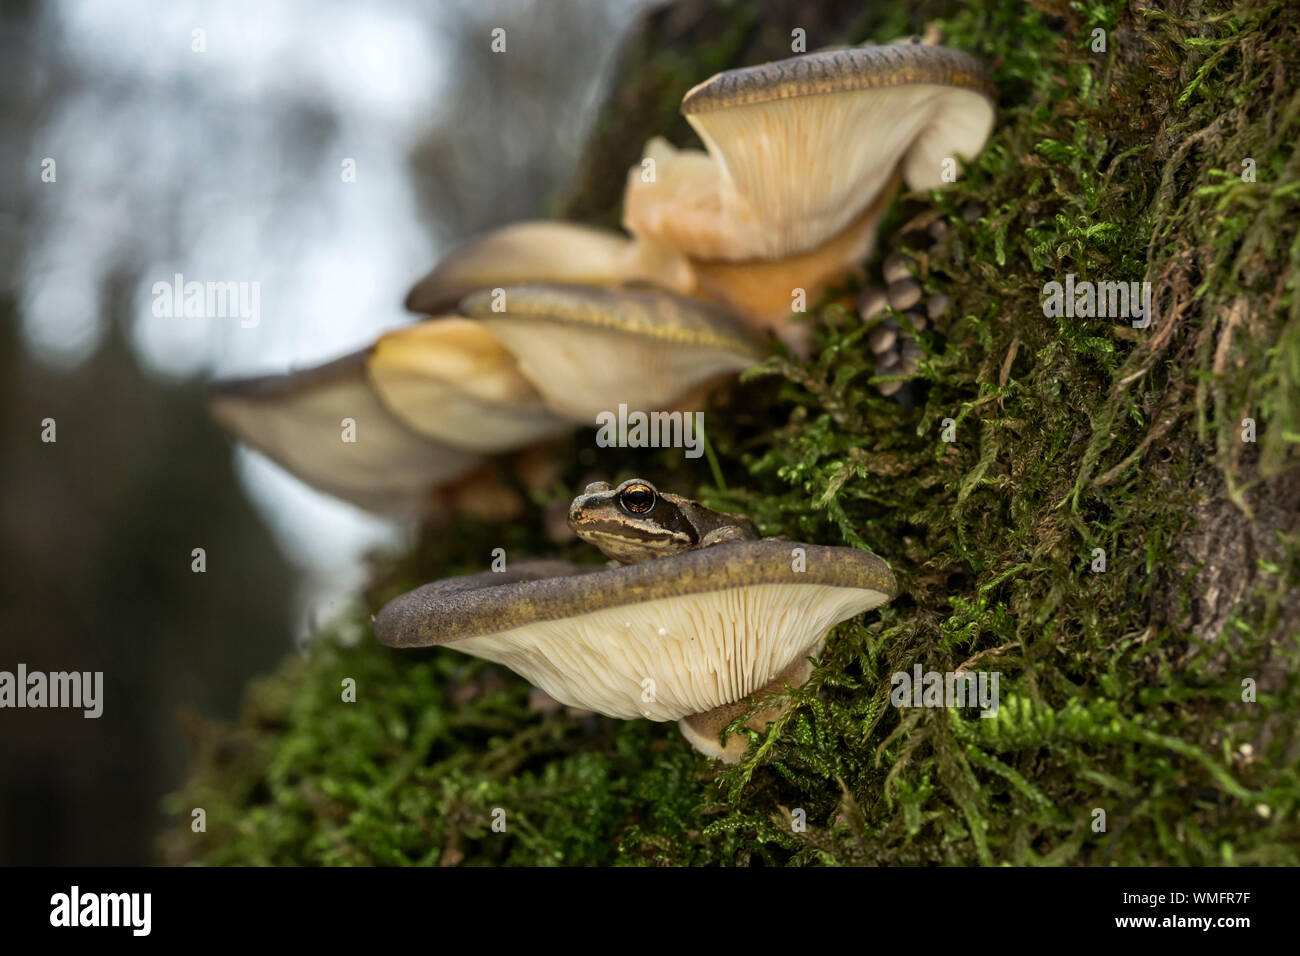 Brun commun européen, la grenouille (Rana temporaria), (Panellus serotinus), la fin de l'oyster champignons, Mecklenburg-Vorpommern, Allemagne Banque D'Images